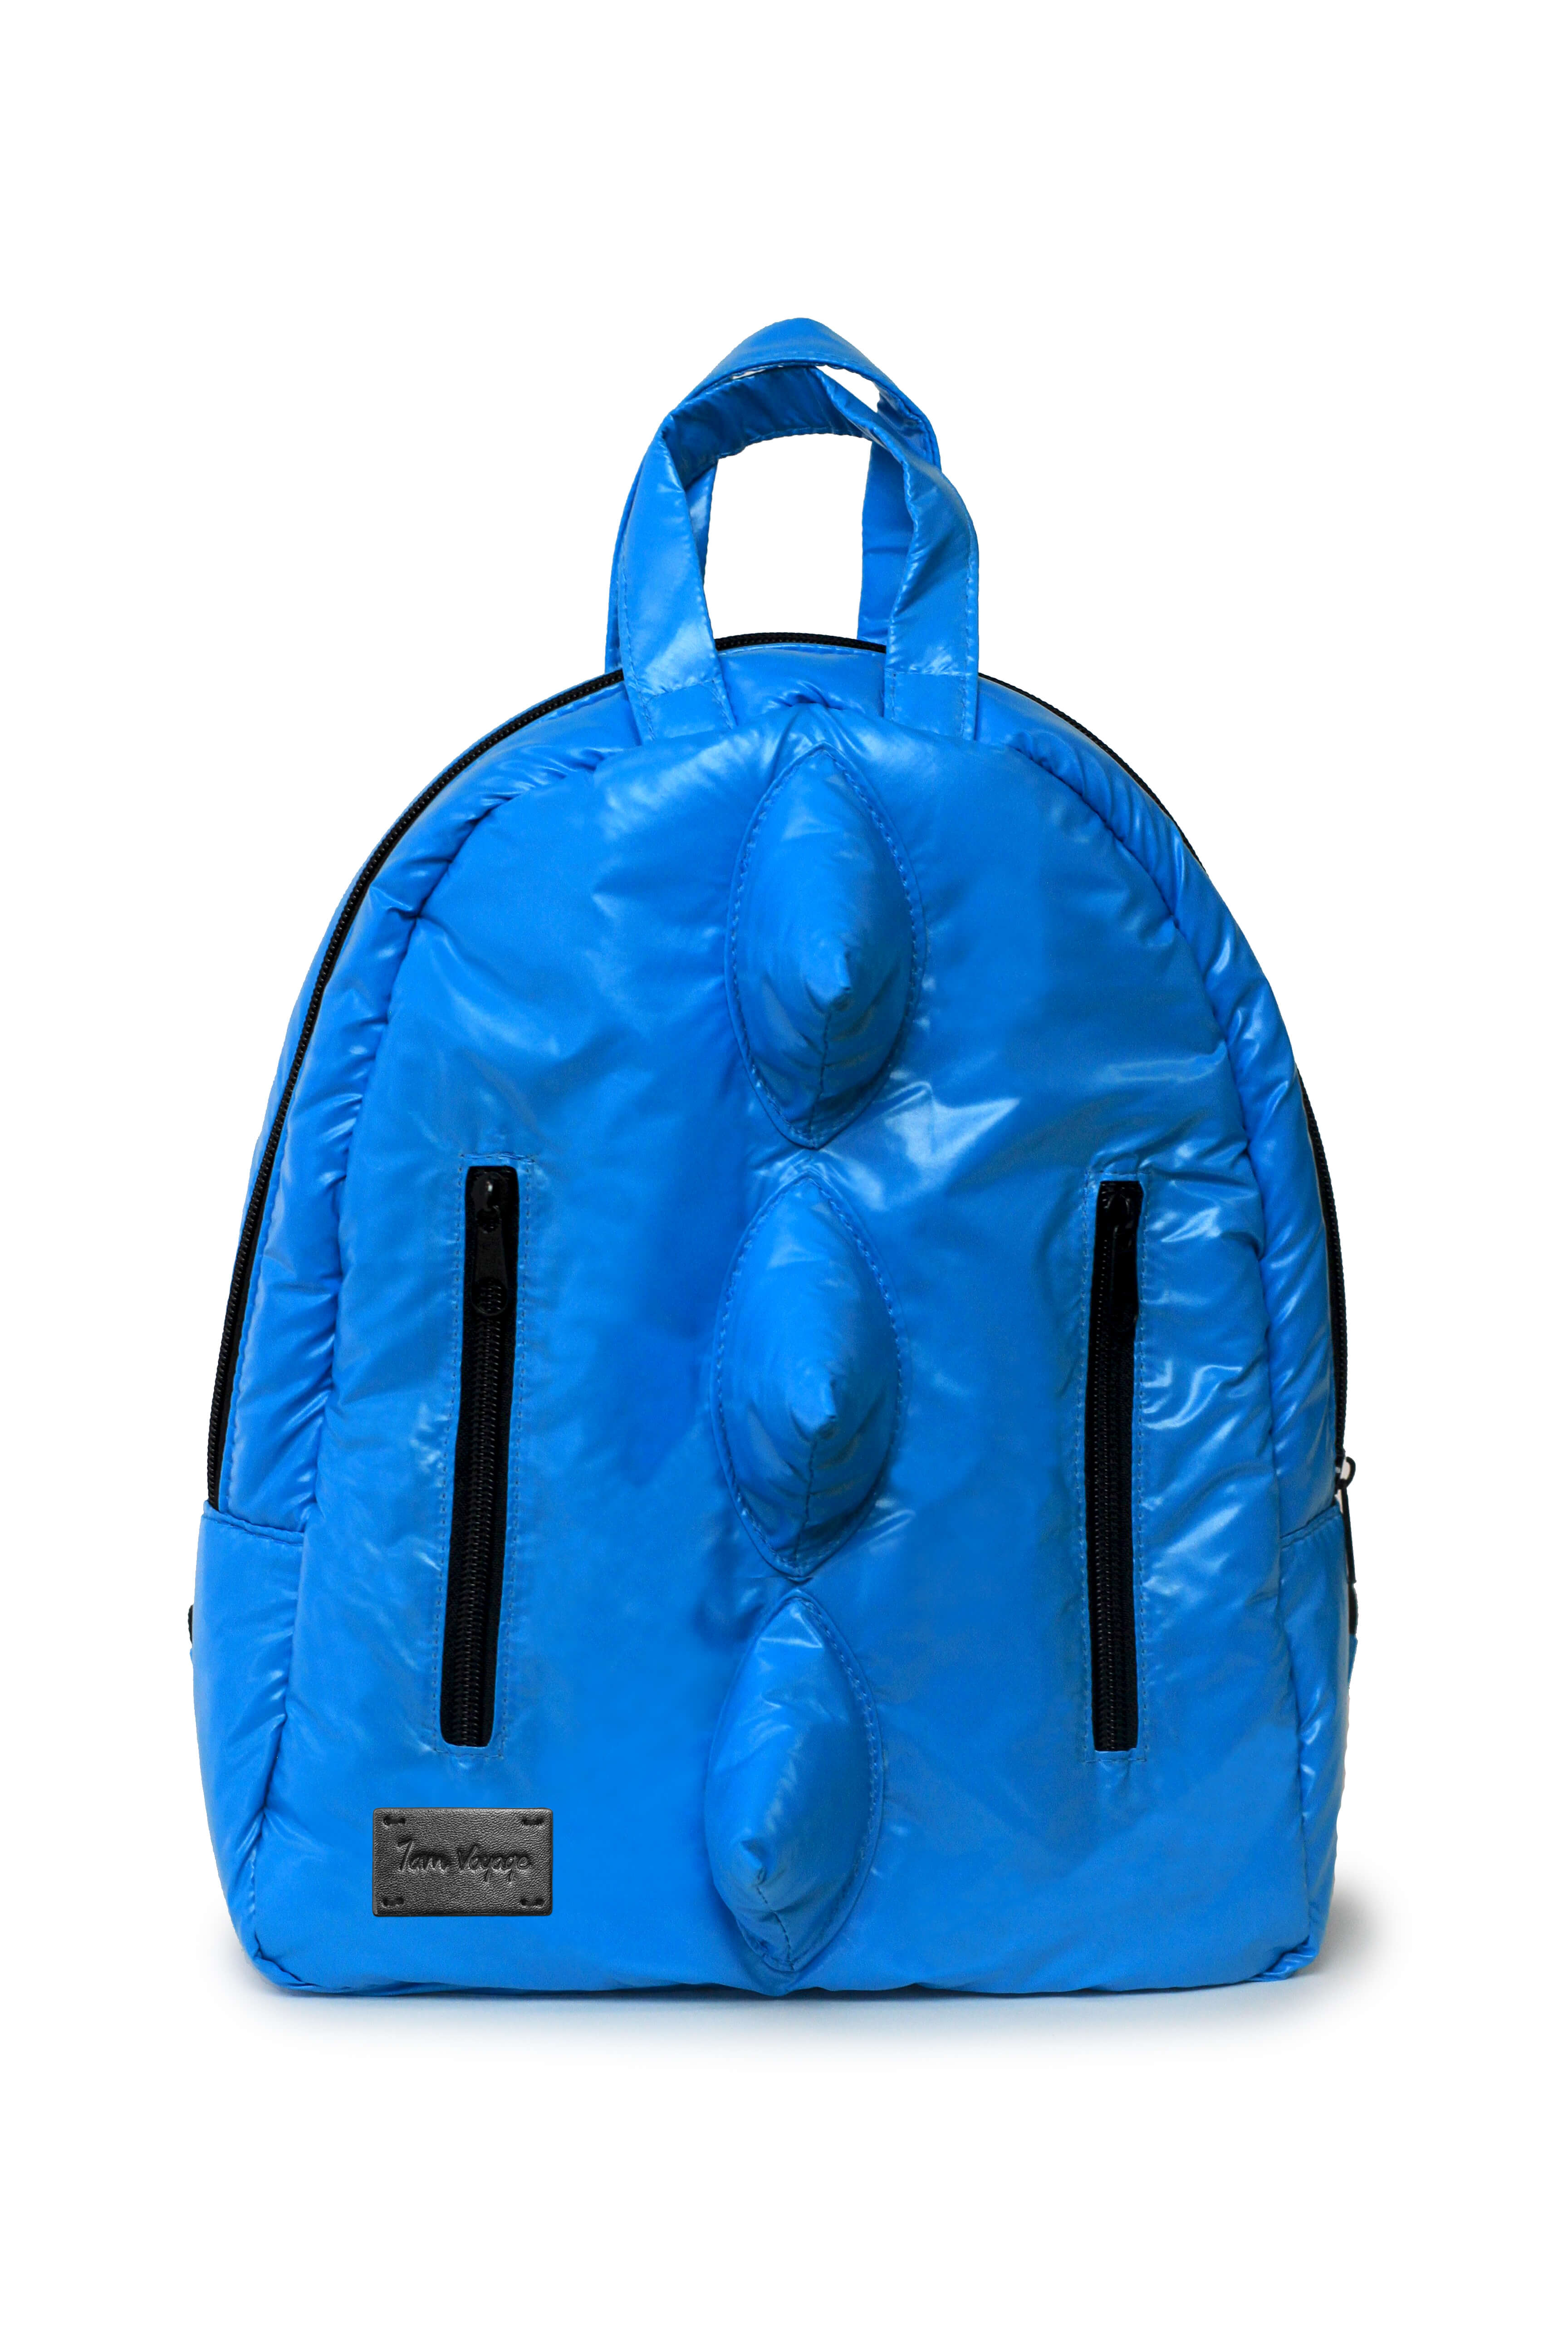 7AM MINI Dino Backpack